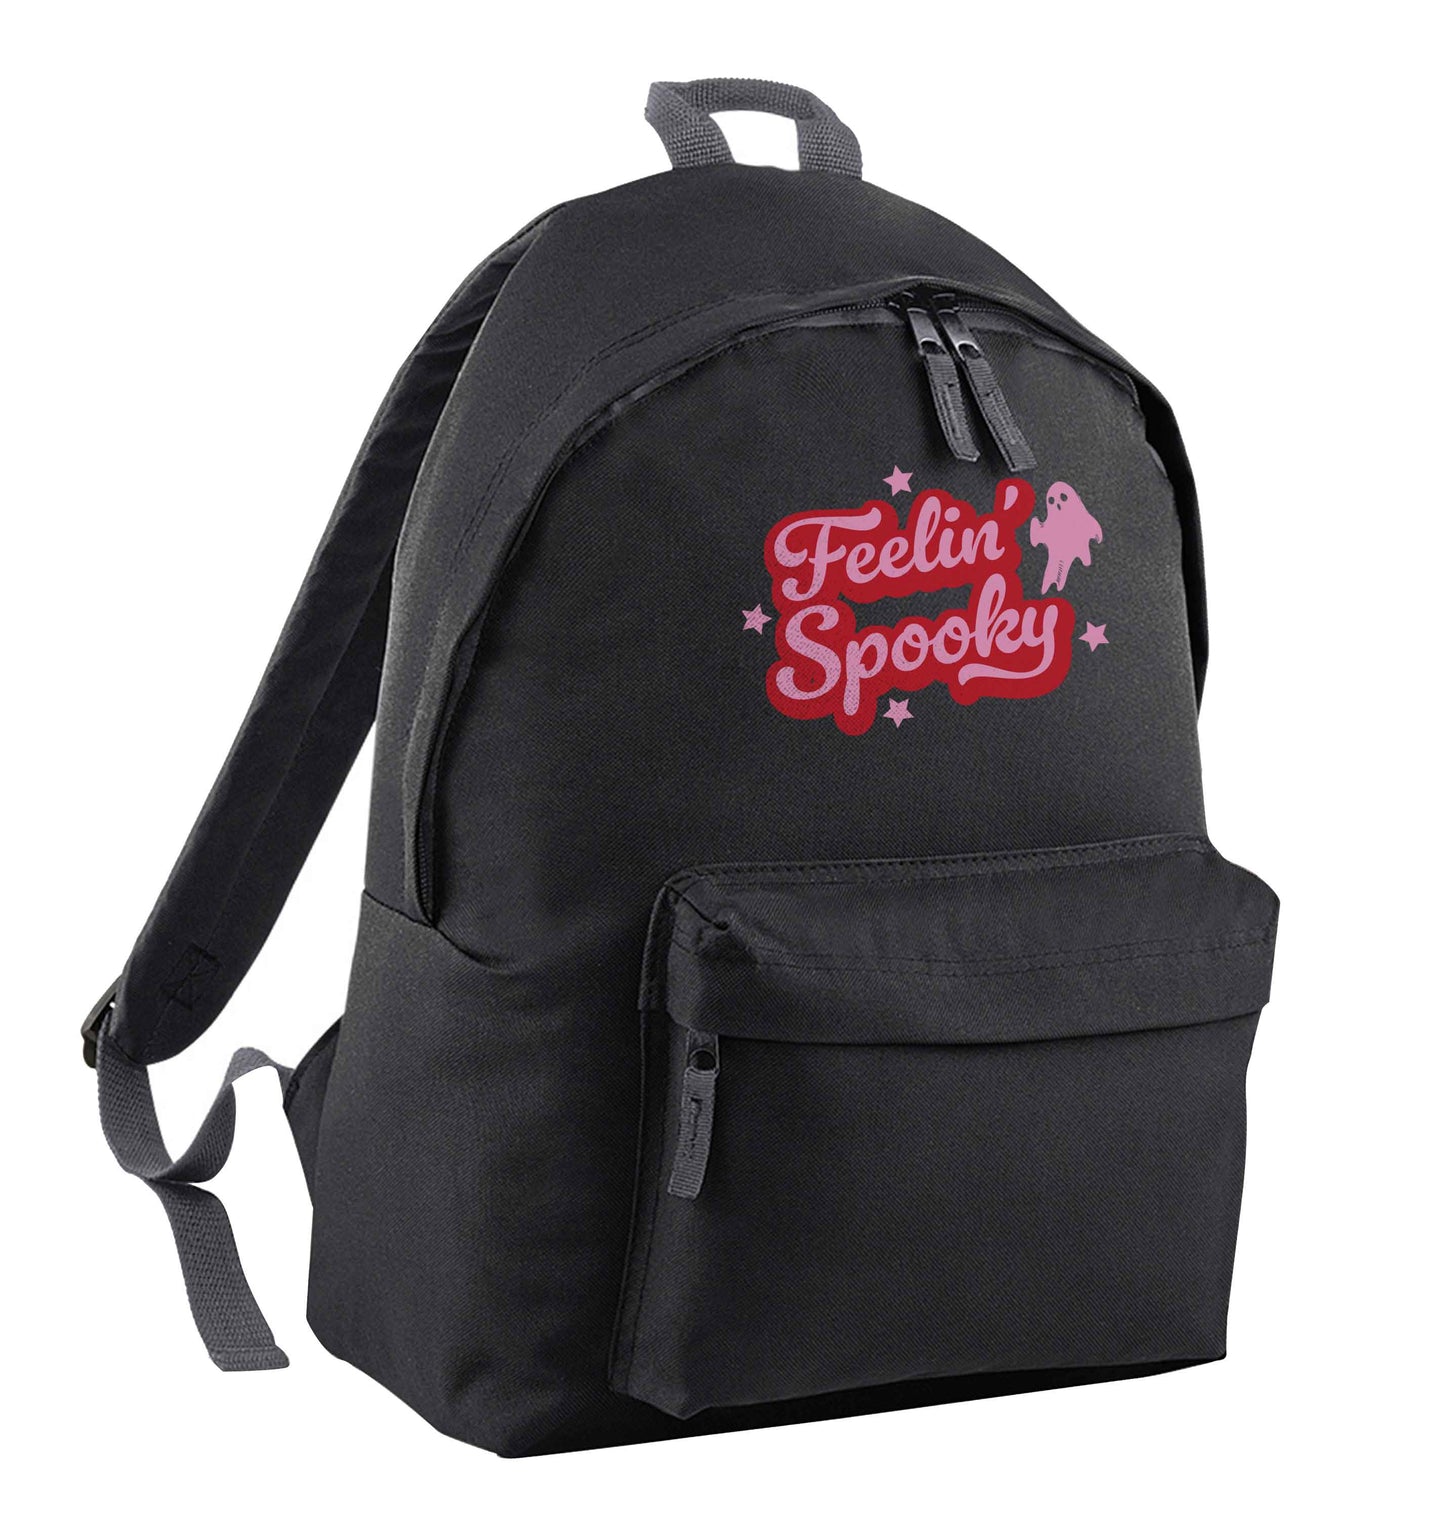 Feelin' Spooky Kit black adults backpack